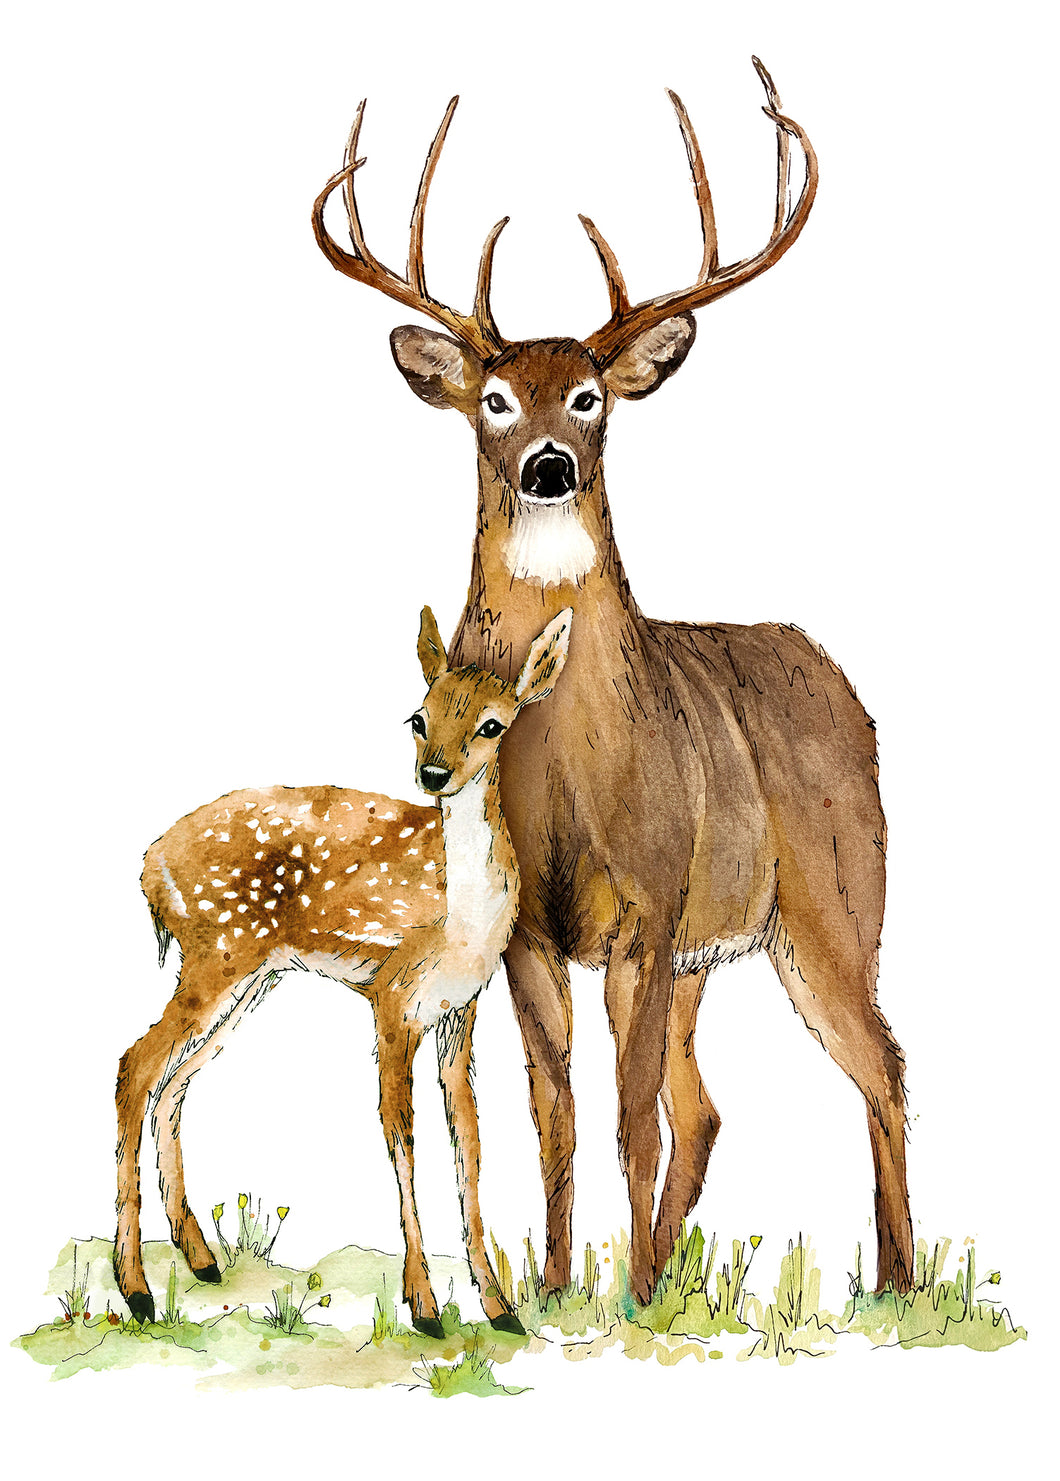 Two Deer